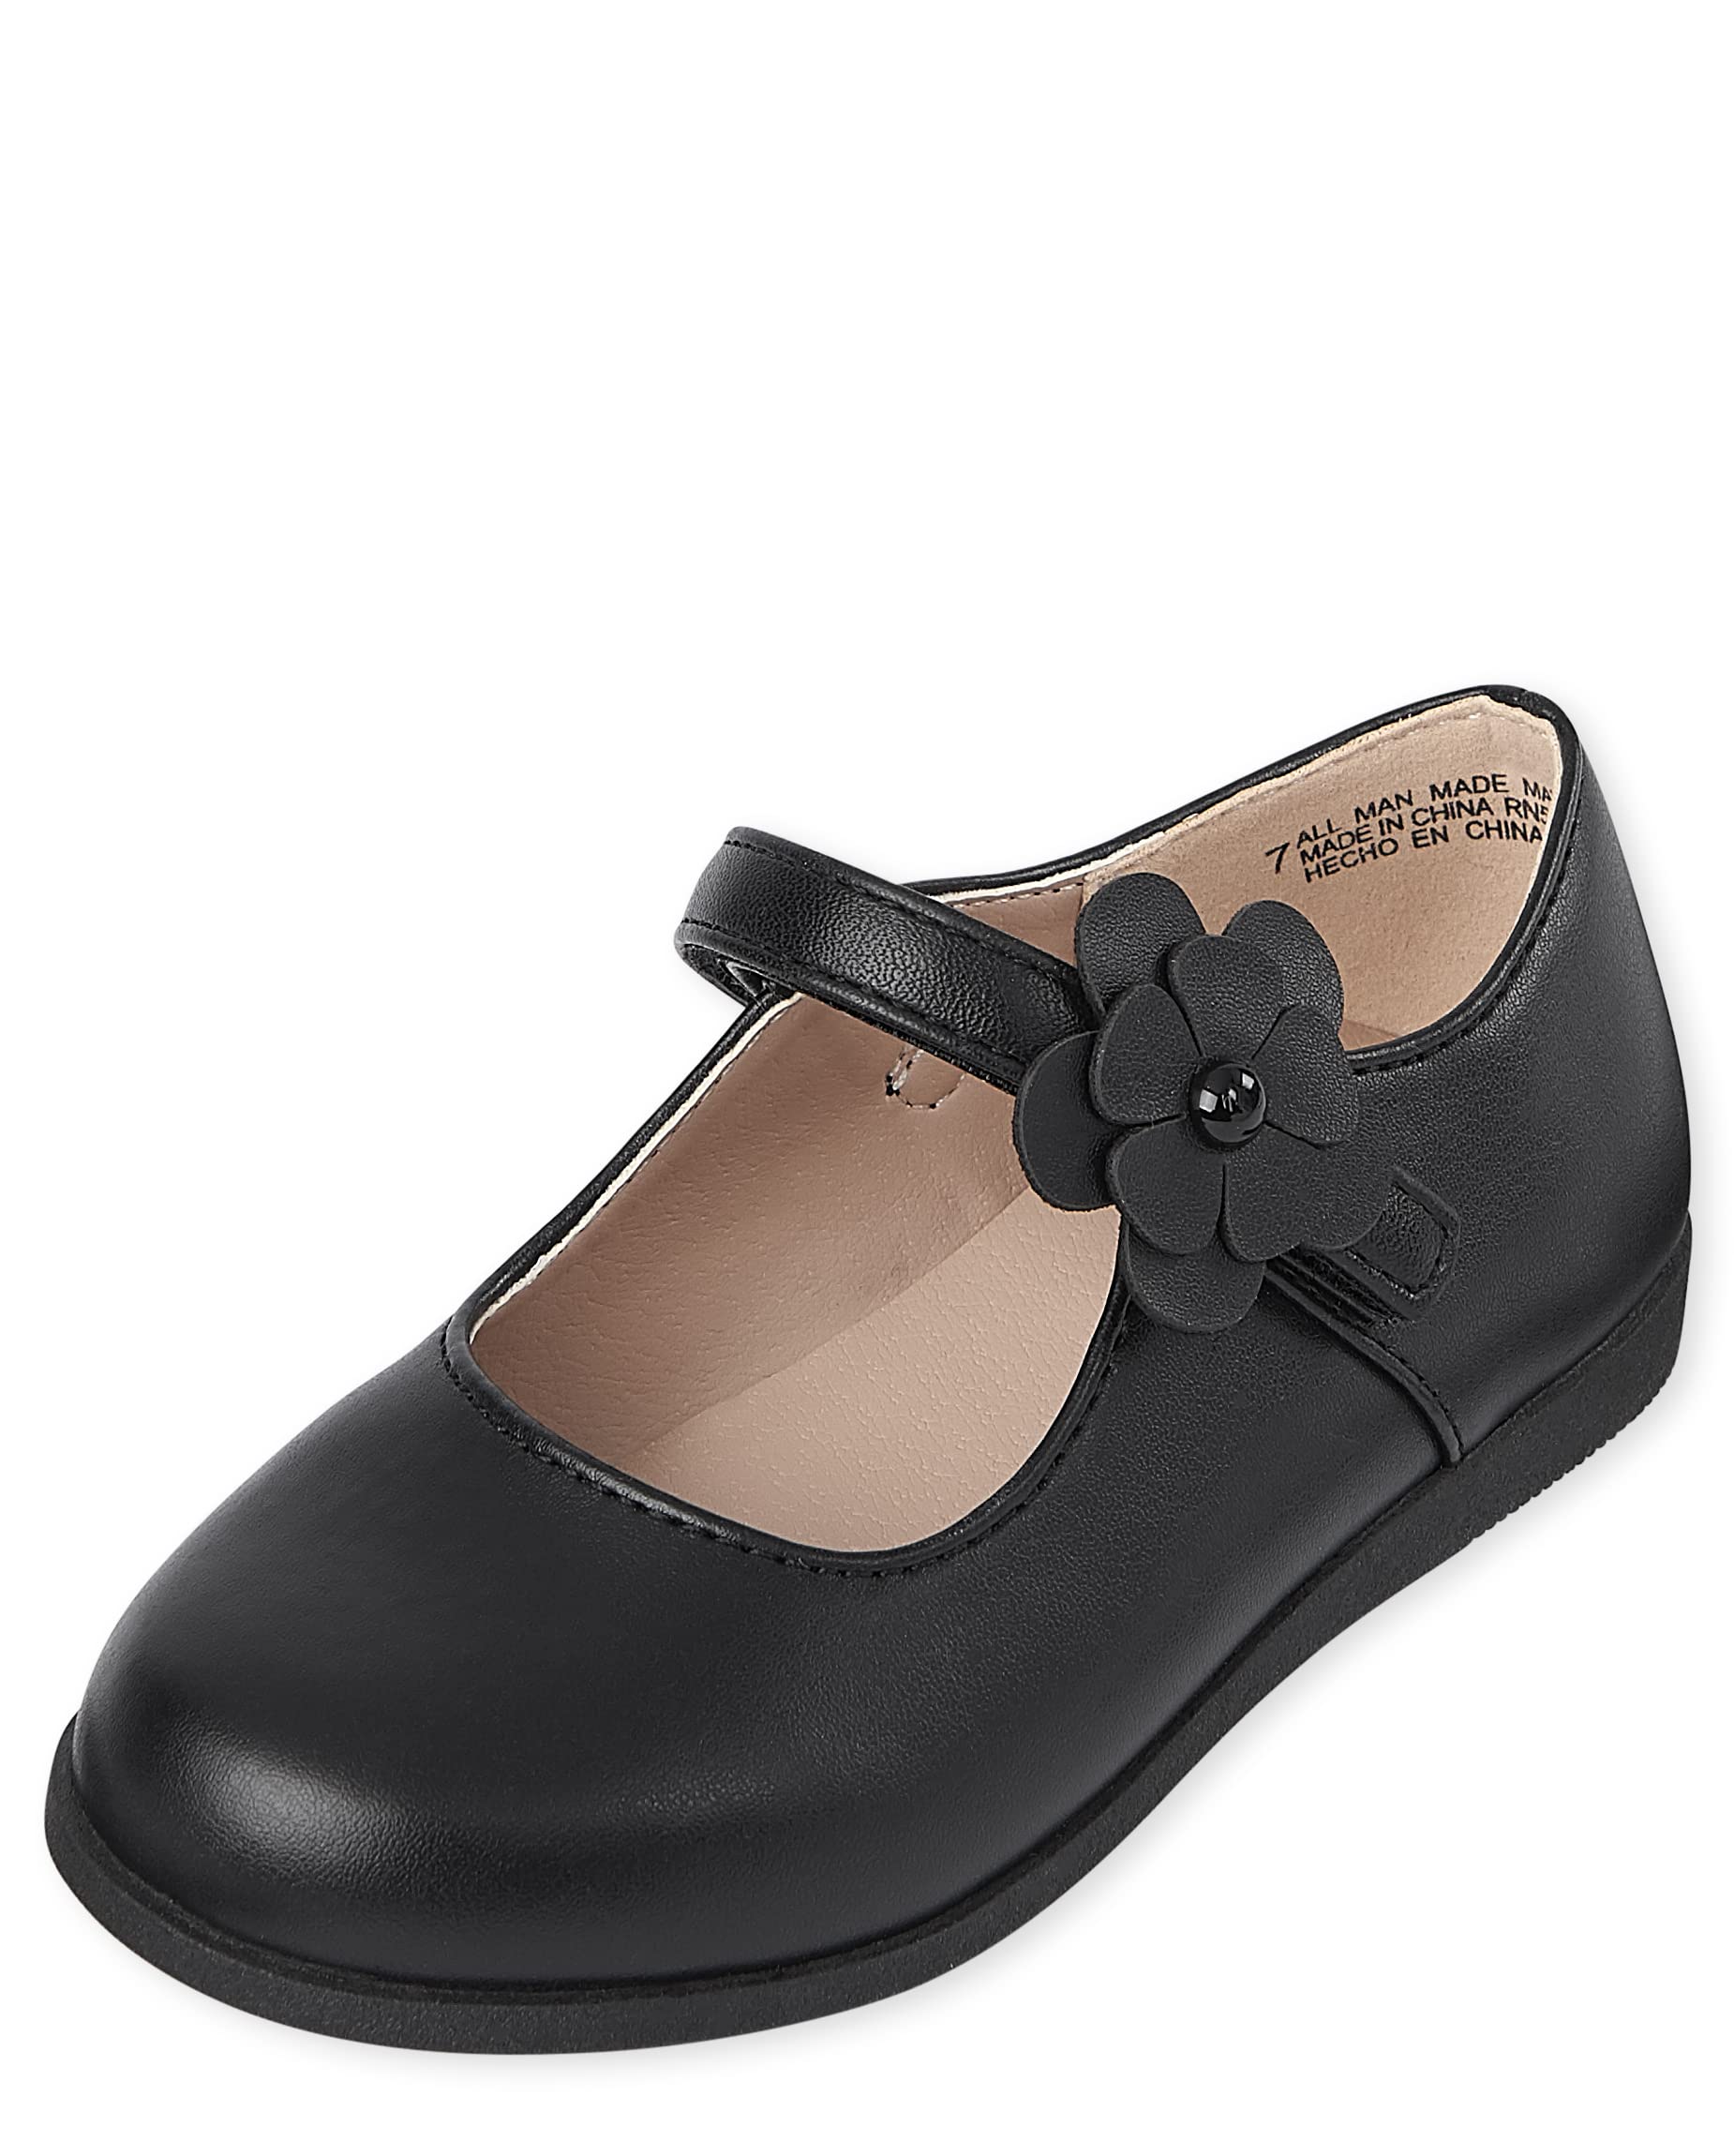 The Children's Place Unisex-Child Uniform Comfort Flex Shoes Mary Jane Flat